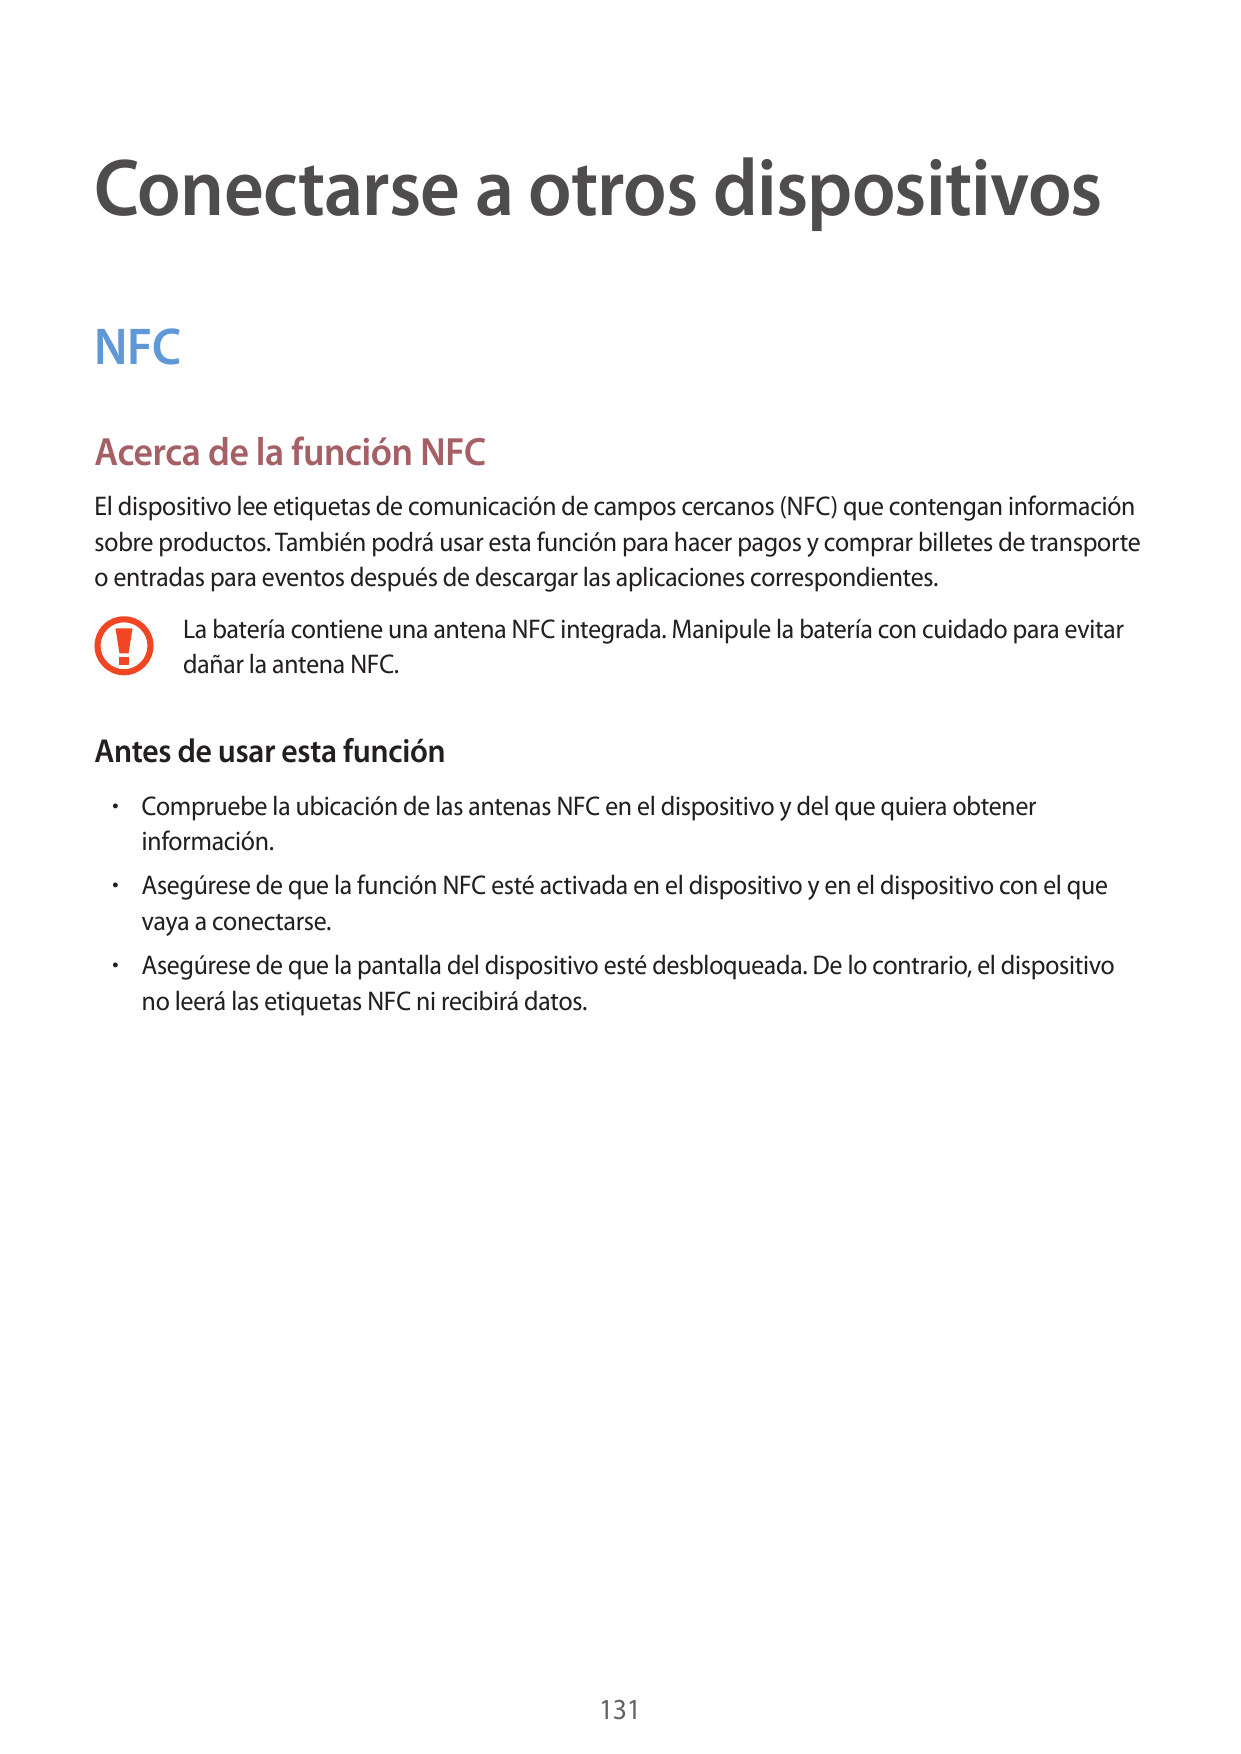 Conectarse a otros dispositivosNFCAcerca de la función NFCEl dispositivo lee etiquetas de comunicación de campos cercanos (NFC) 